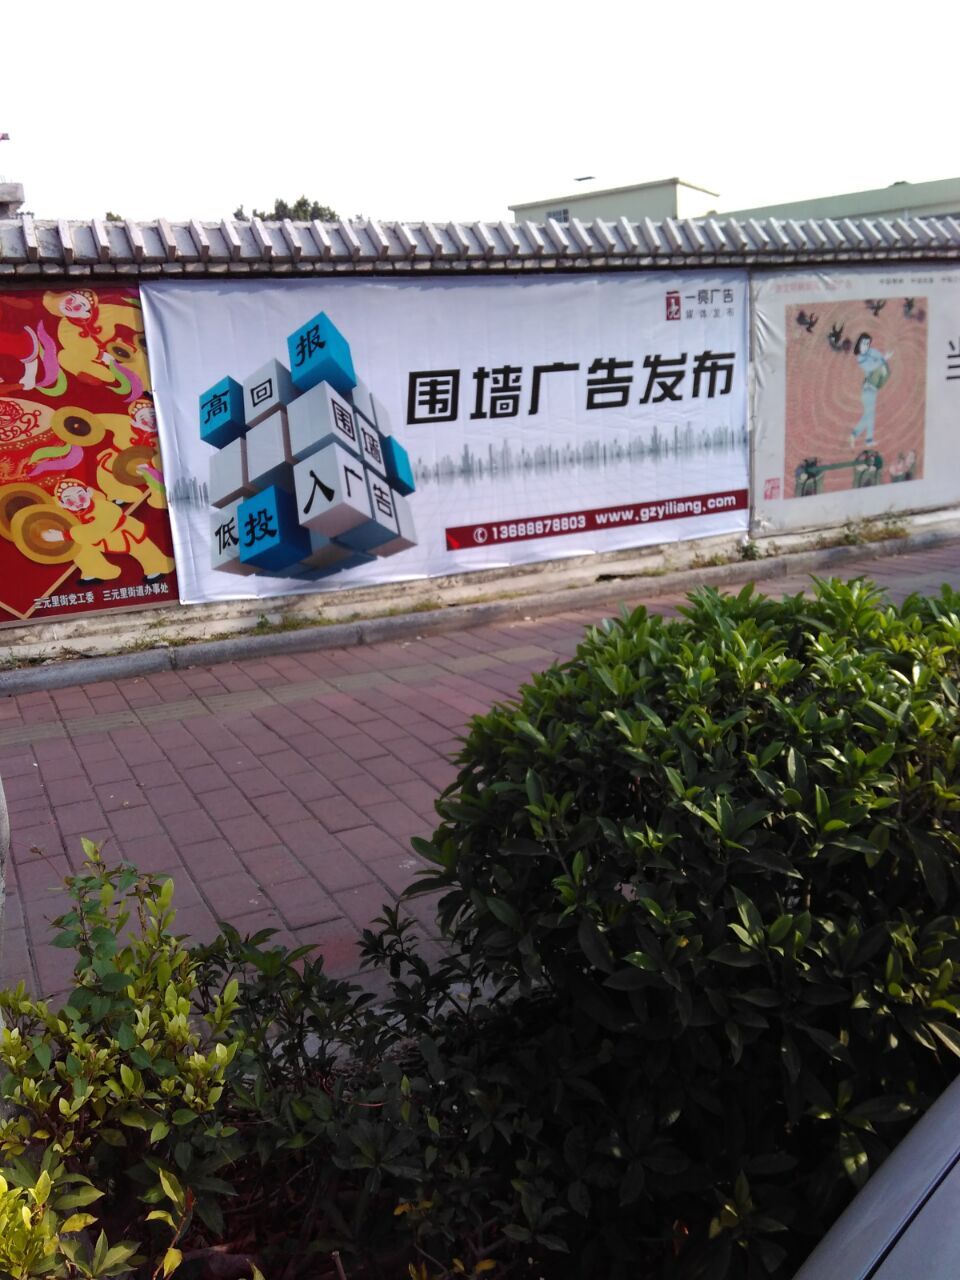 供应广州围墙广告发布--火热进行中